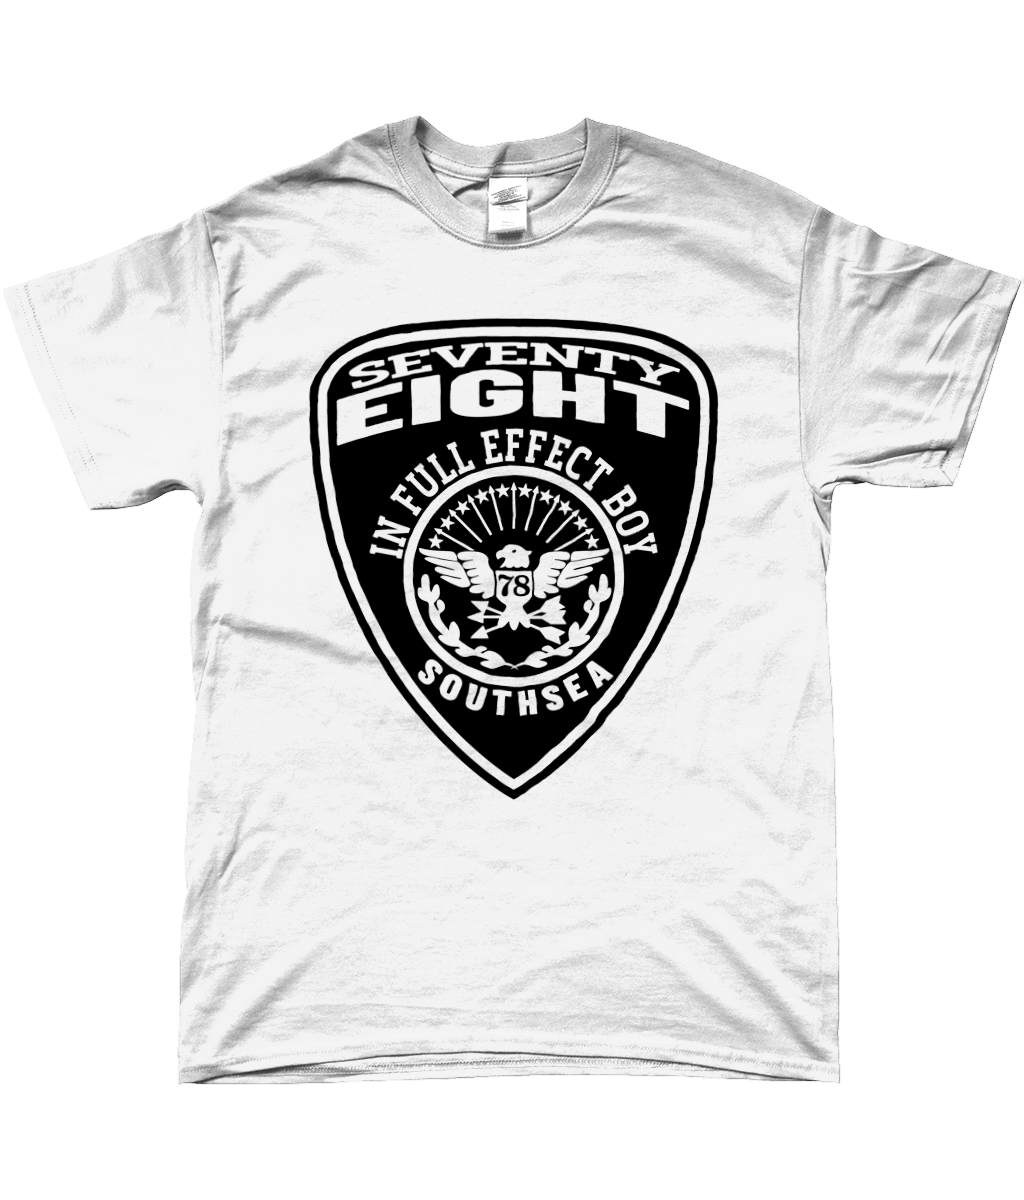 78 in full effect - Black on White - T-shirt